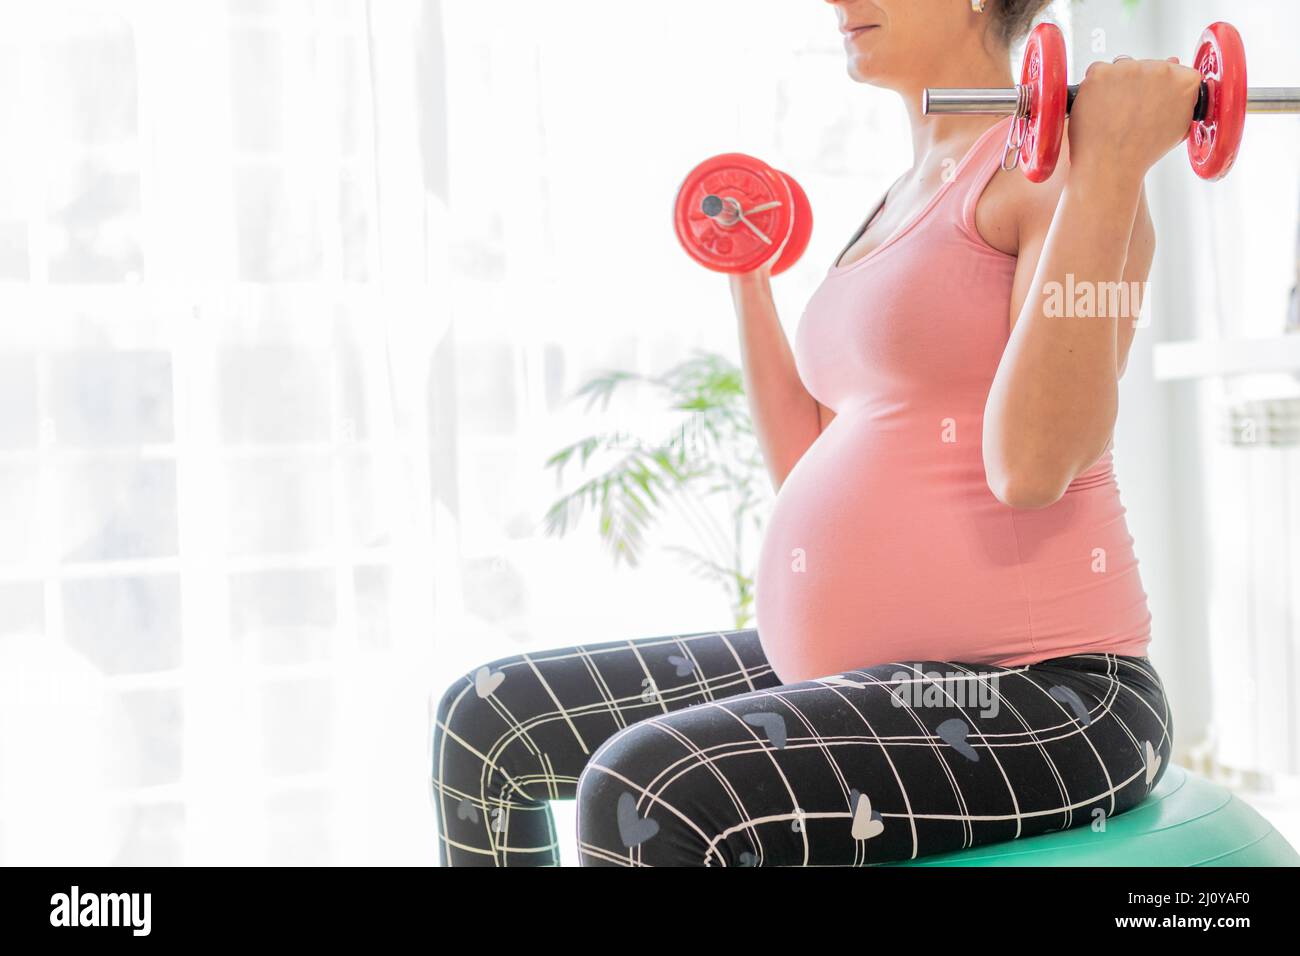 jeune femme enceinte levant des haltères assis sur une balle de fitness. soins de santé et de corps et exercices pendant la grossesse Banque D'Images